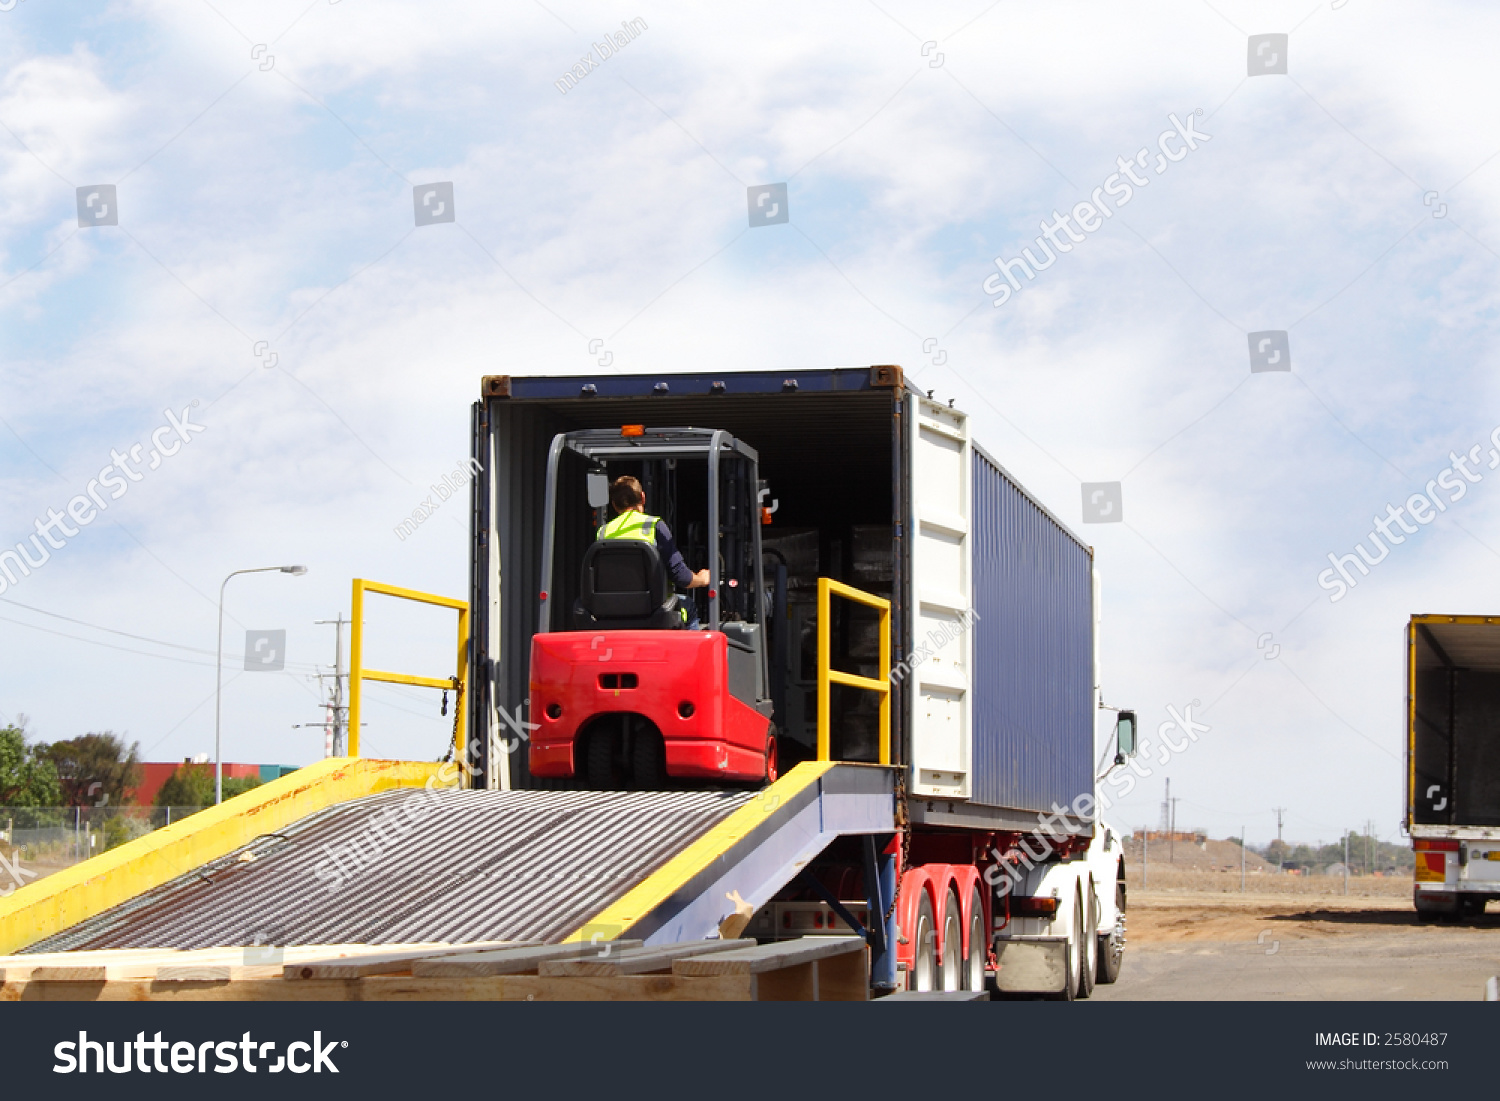 Forklift Loading Ramp